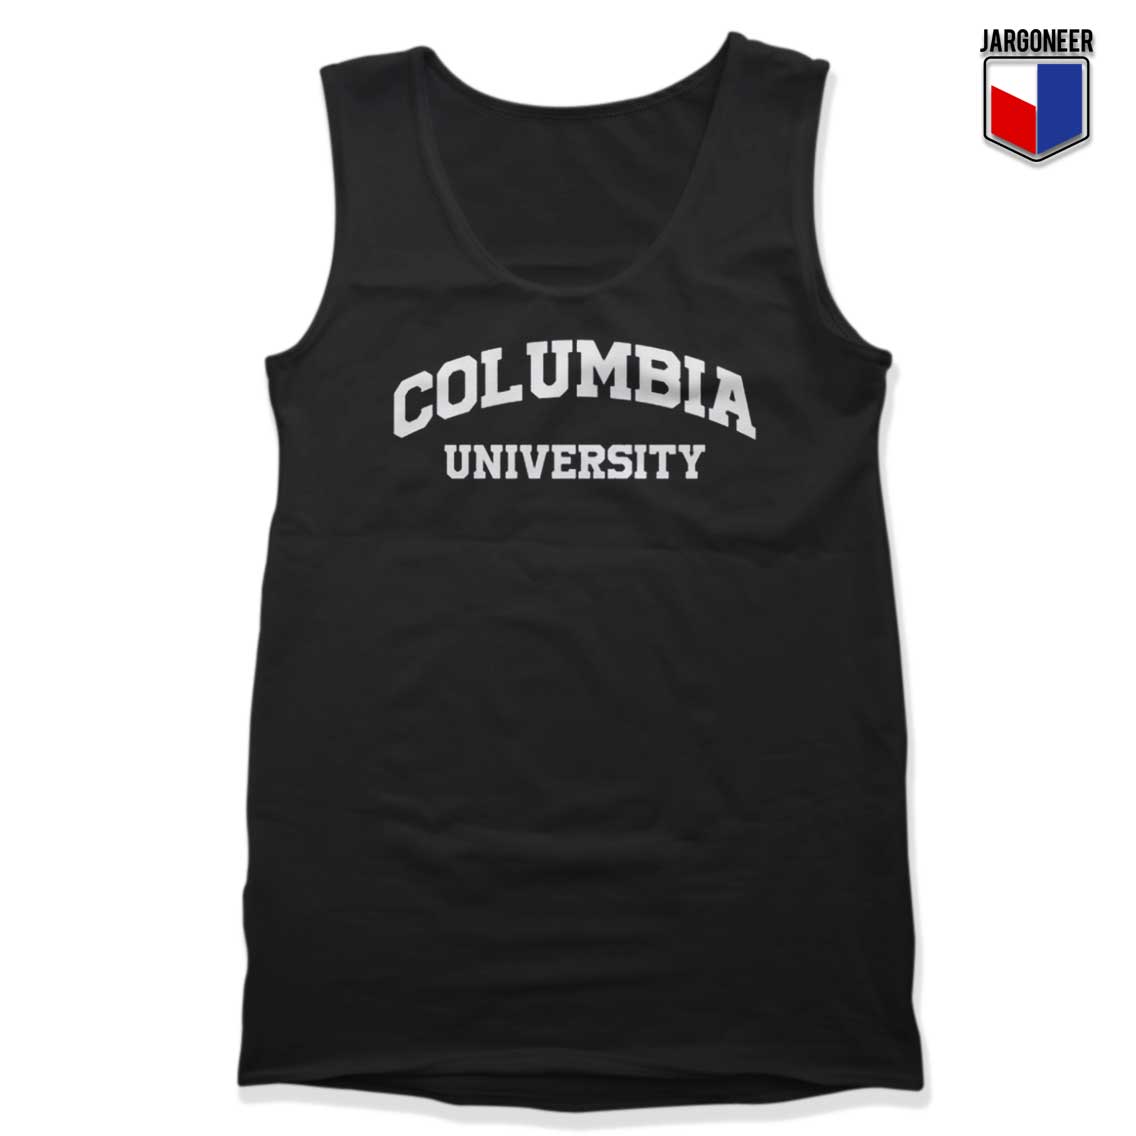 Columbia University Tank Top - Shop Unique Graphic Cool Shirt Designs